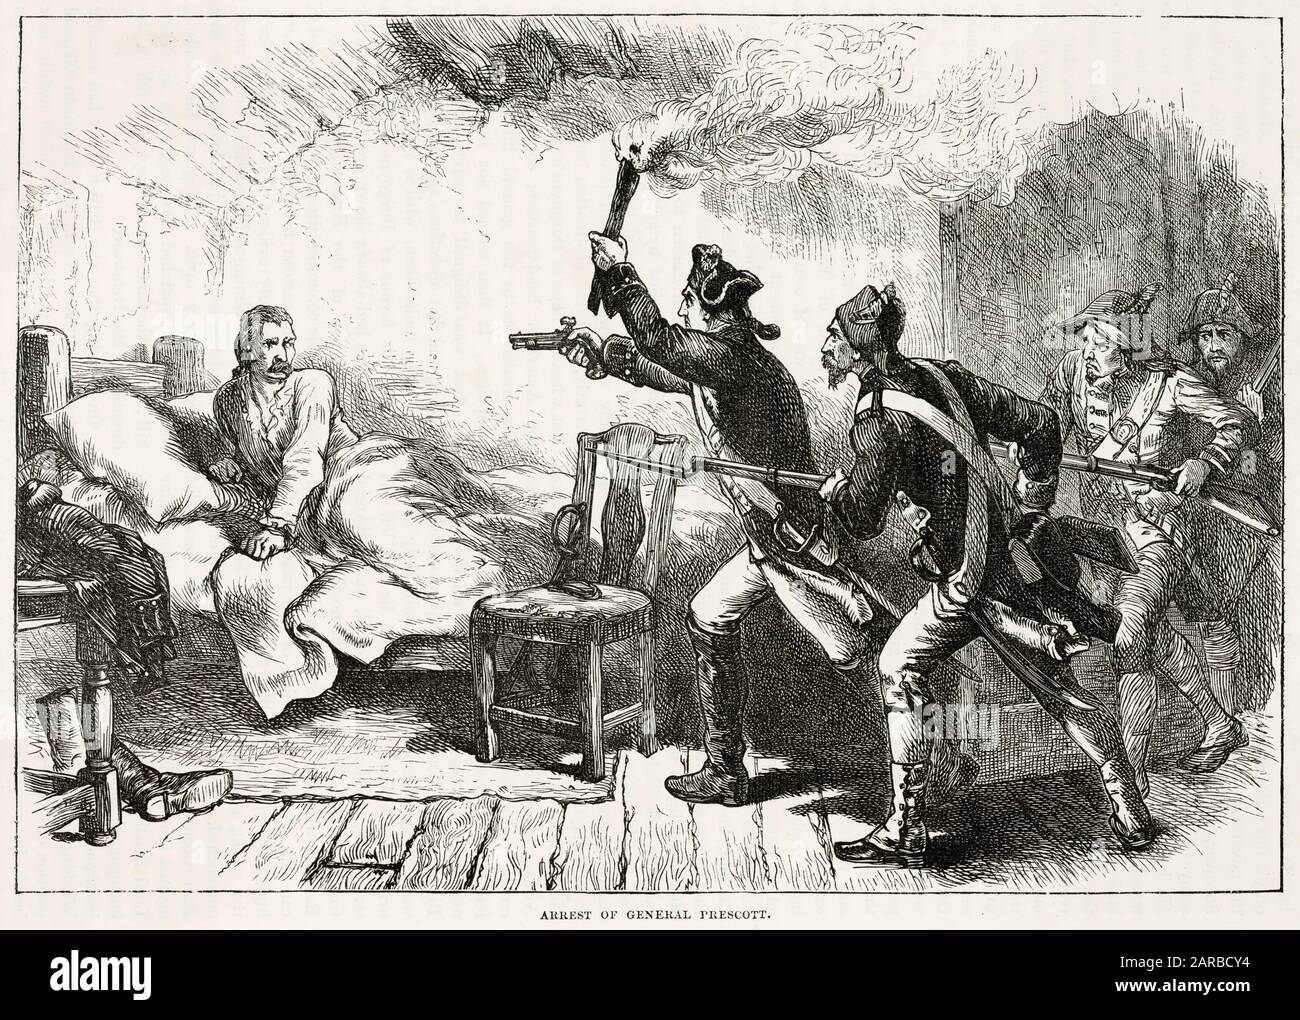 Samuel Prescott Wird Während Des amerikanischen Unabhängigkeitskrieges von den Briten Gefangen Genommen Datum: 1777 Stockfoto